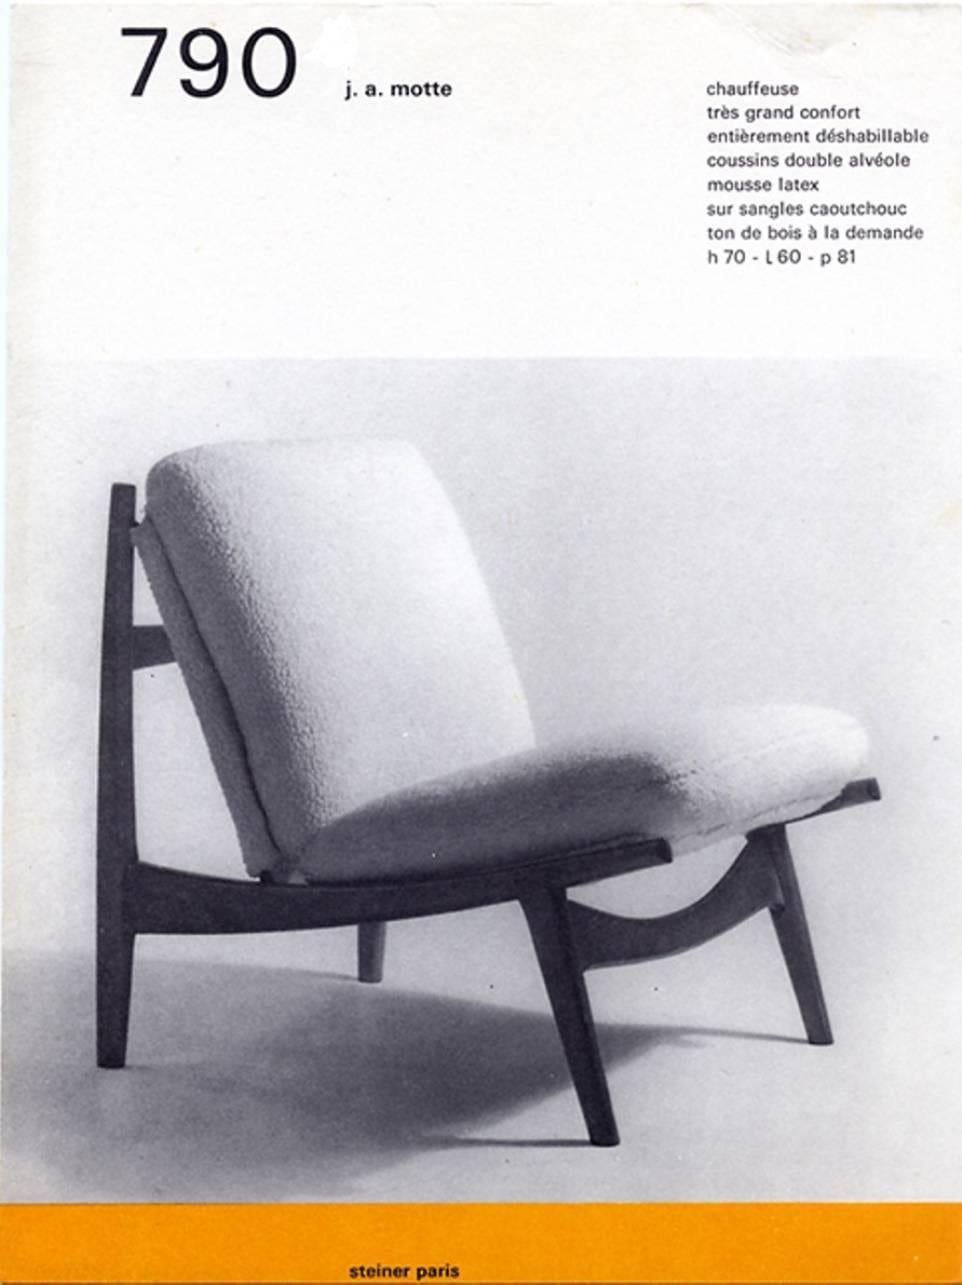 Magnifique chaise longue de forme organique:: modèle '790':: conçue par Joseph Andre Motte (1925-2013) pour Steiner:: France:: en 1960. 

Cette chaise a été restaurée de manière fonctionnelle en récupérant la vieille et rare garniture en laine